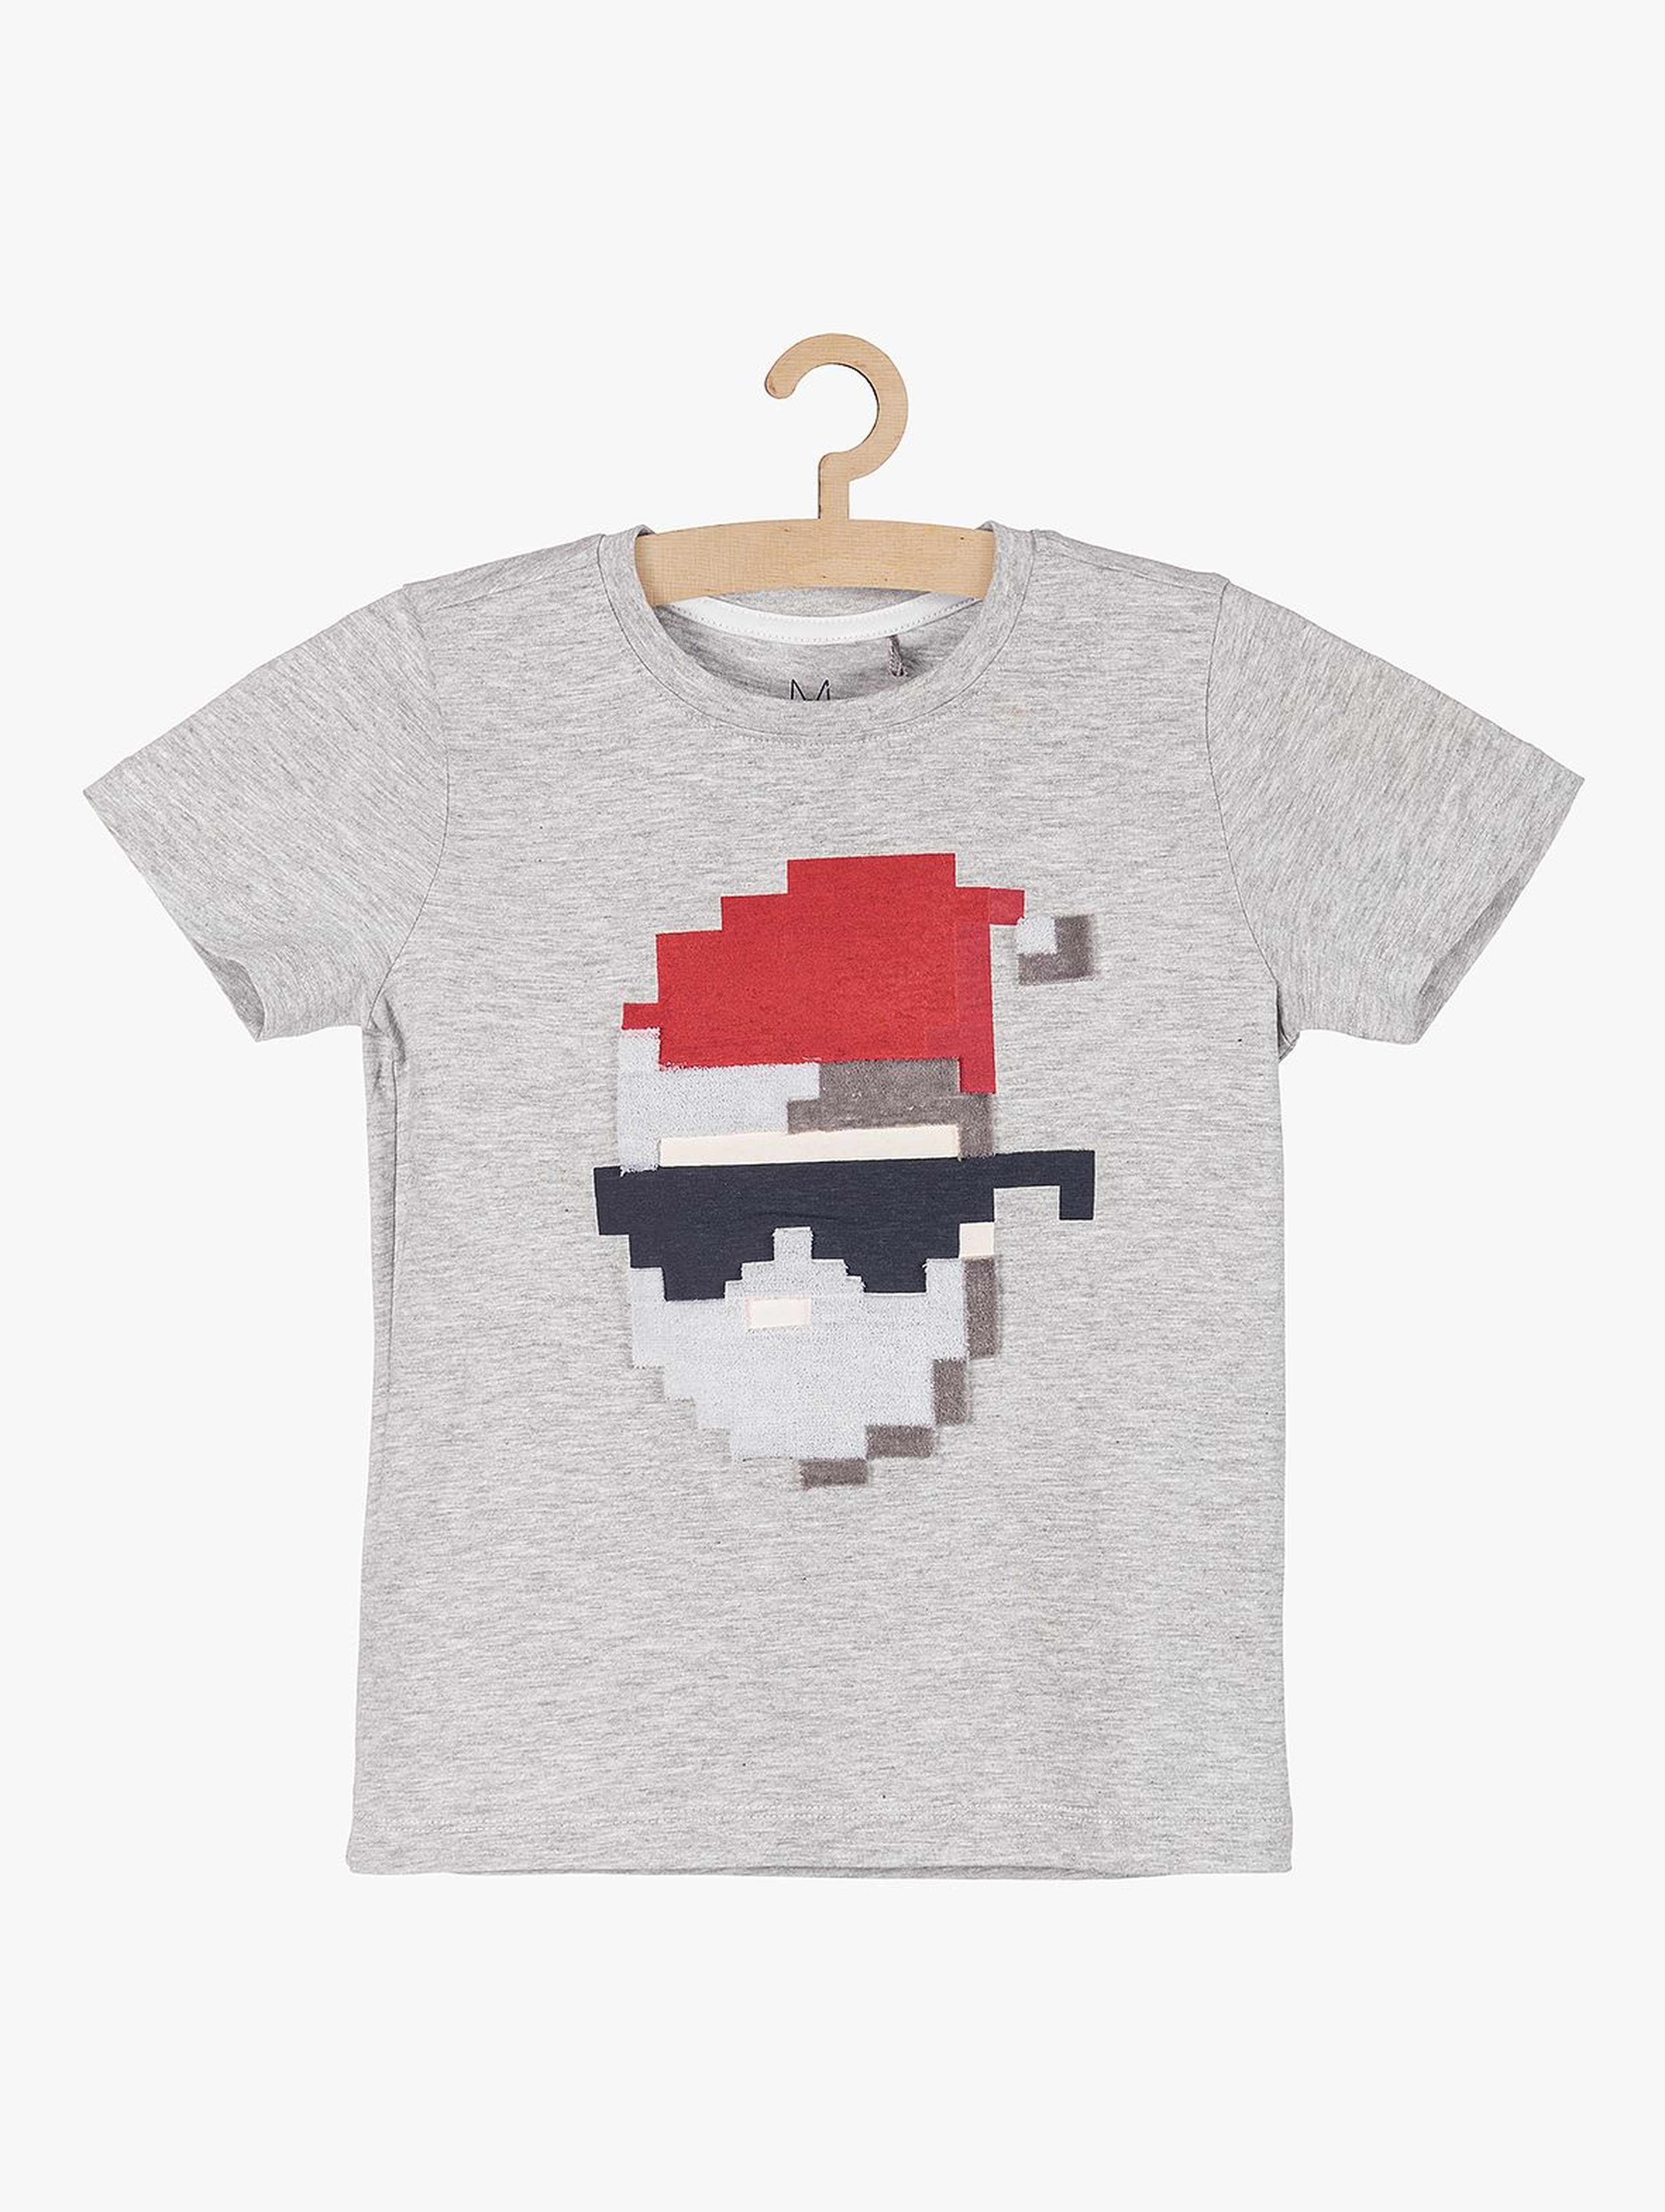 T-shirt dzianinowy dla chłopca z motywem świątecznym